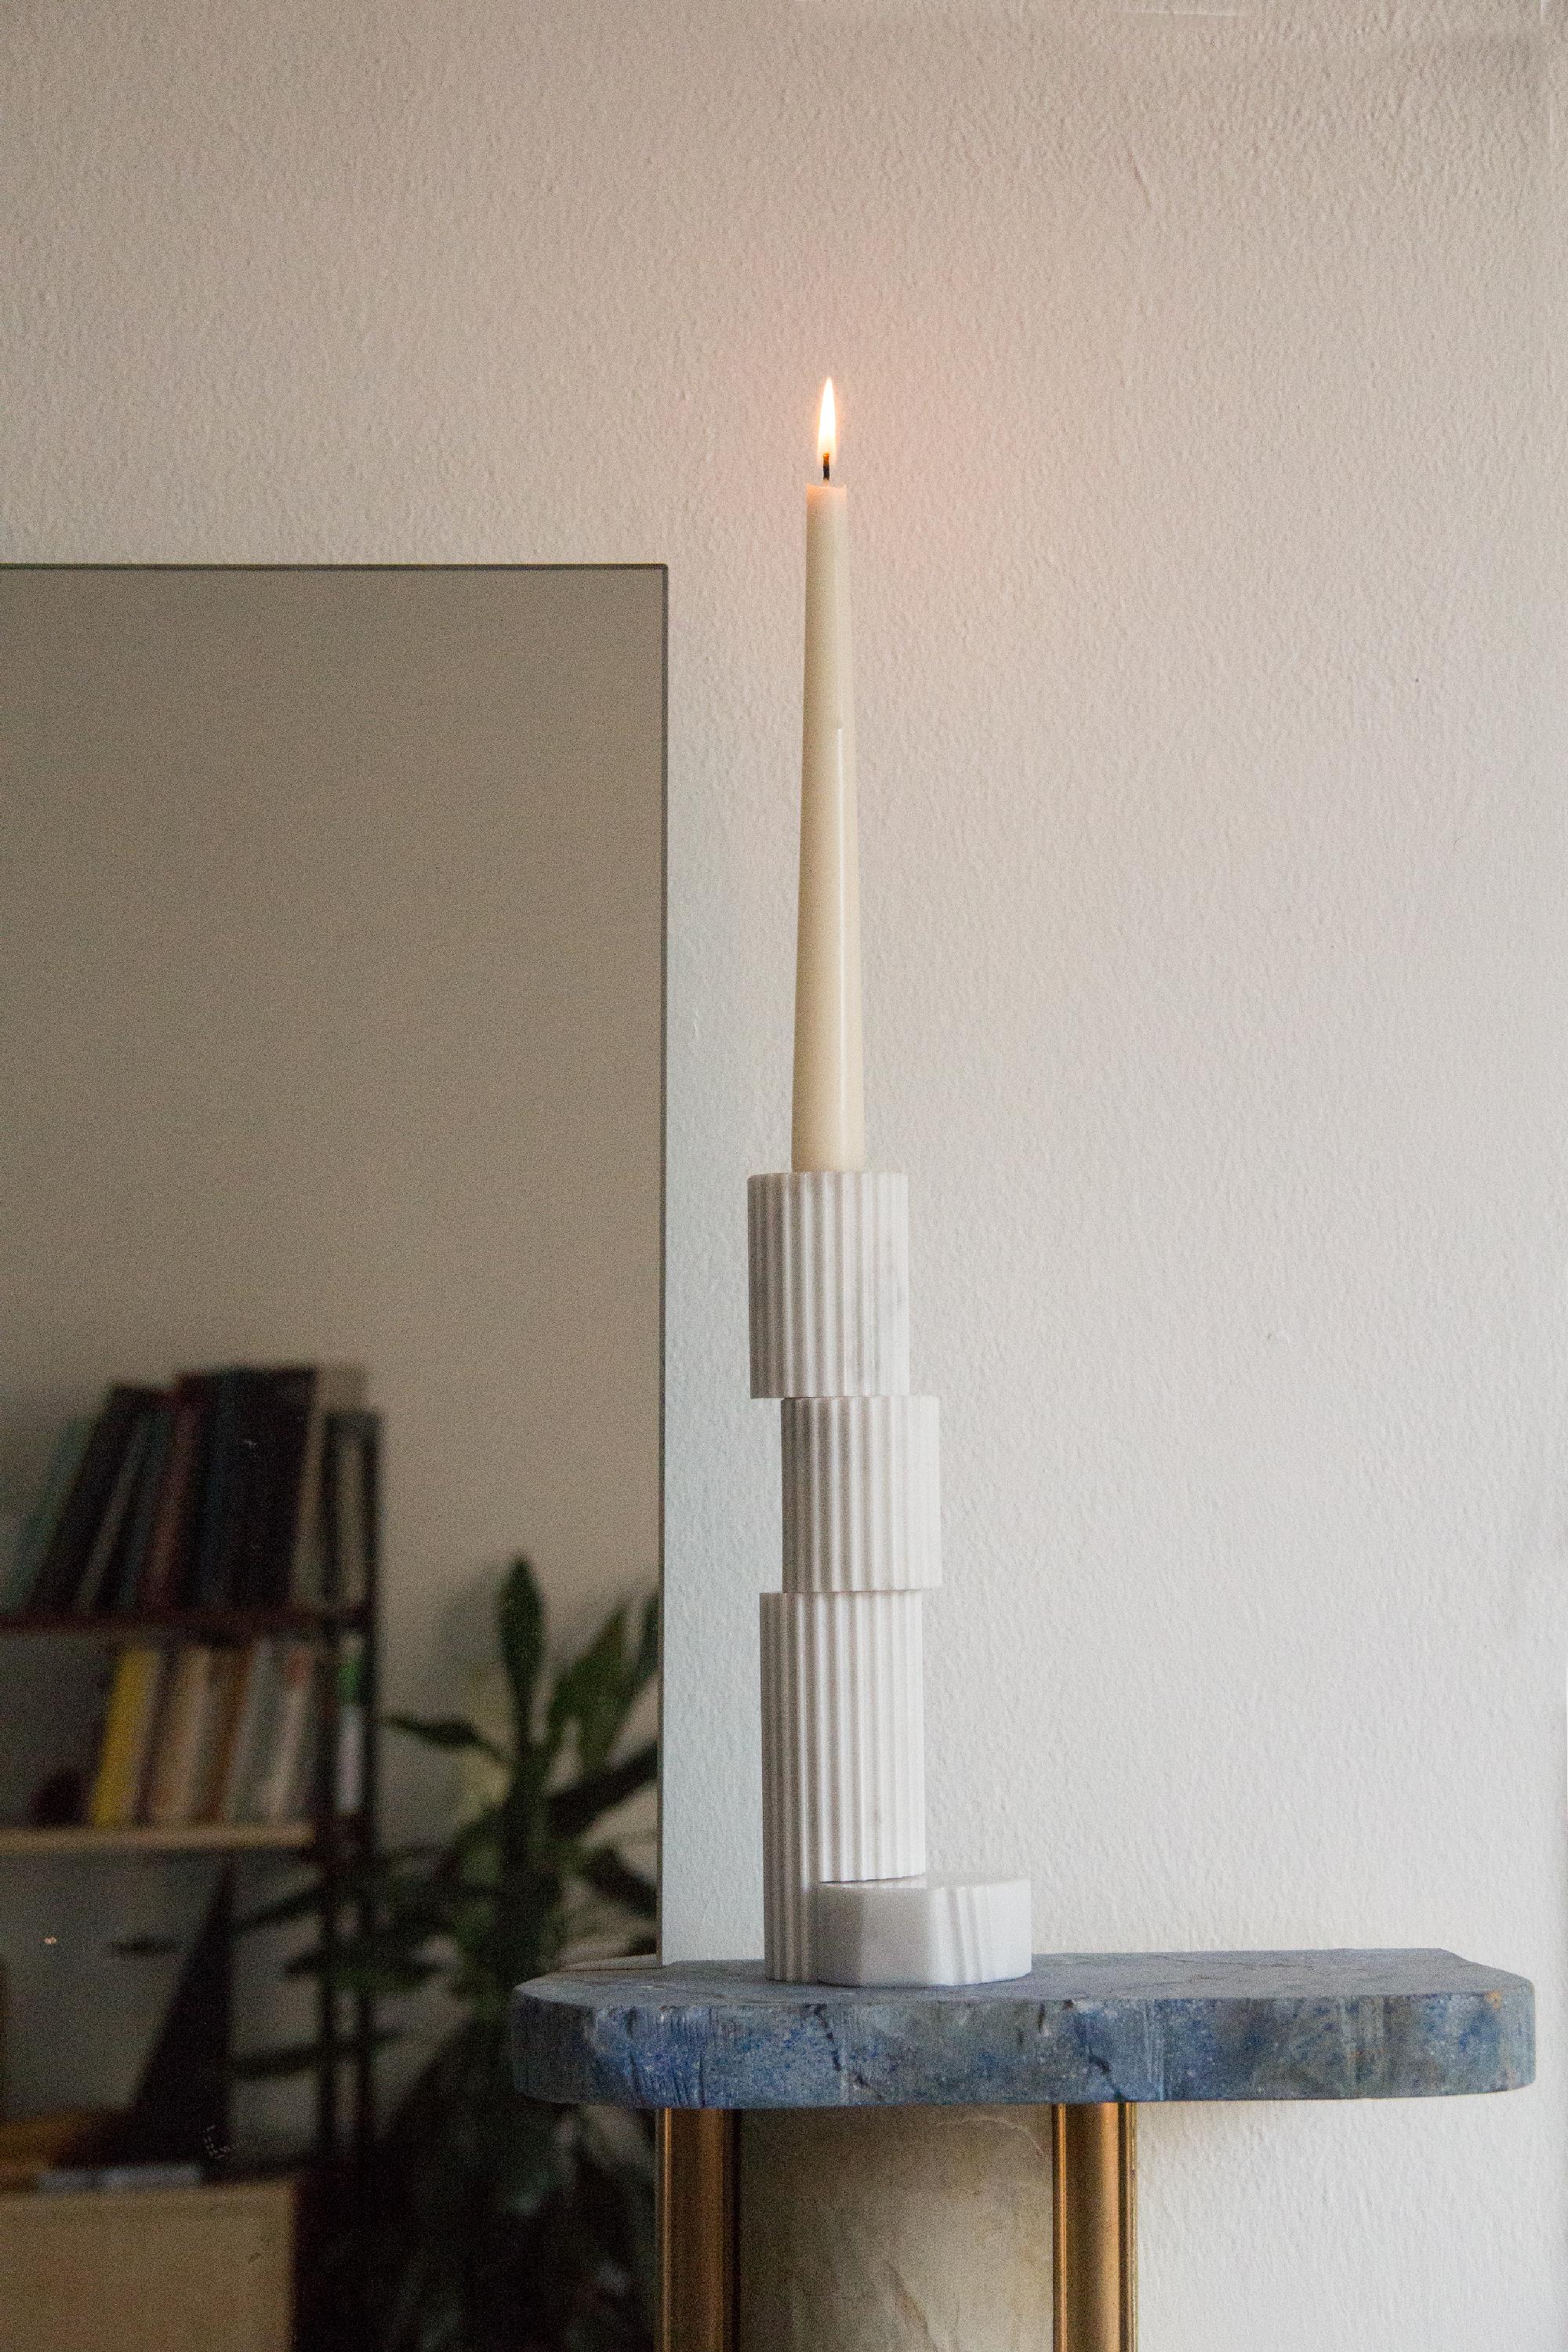 21 Jahrhundert Zeitgenössische Marmor Rovinette Kerzenhalter Handgemacht in Italien von Ilaria Bianchi.

Handgedrehter Kerzenhalter aus weißem Carrara-Marmor, hergestellt von italienischen Kunsthandwerkern.
Dieser Kerzenständer von Rovinette ist aus